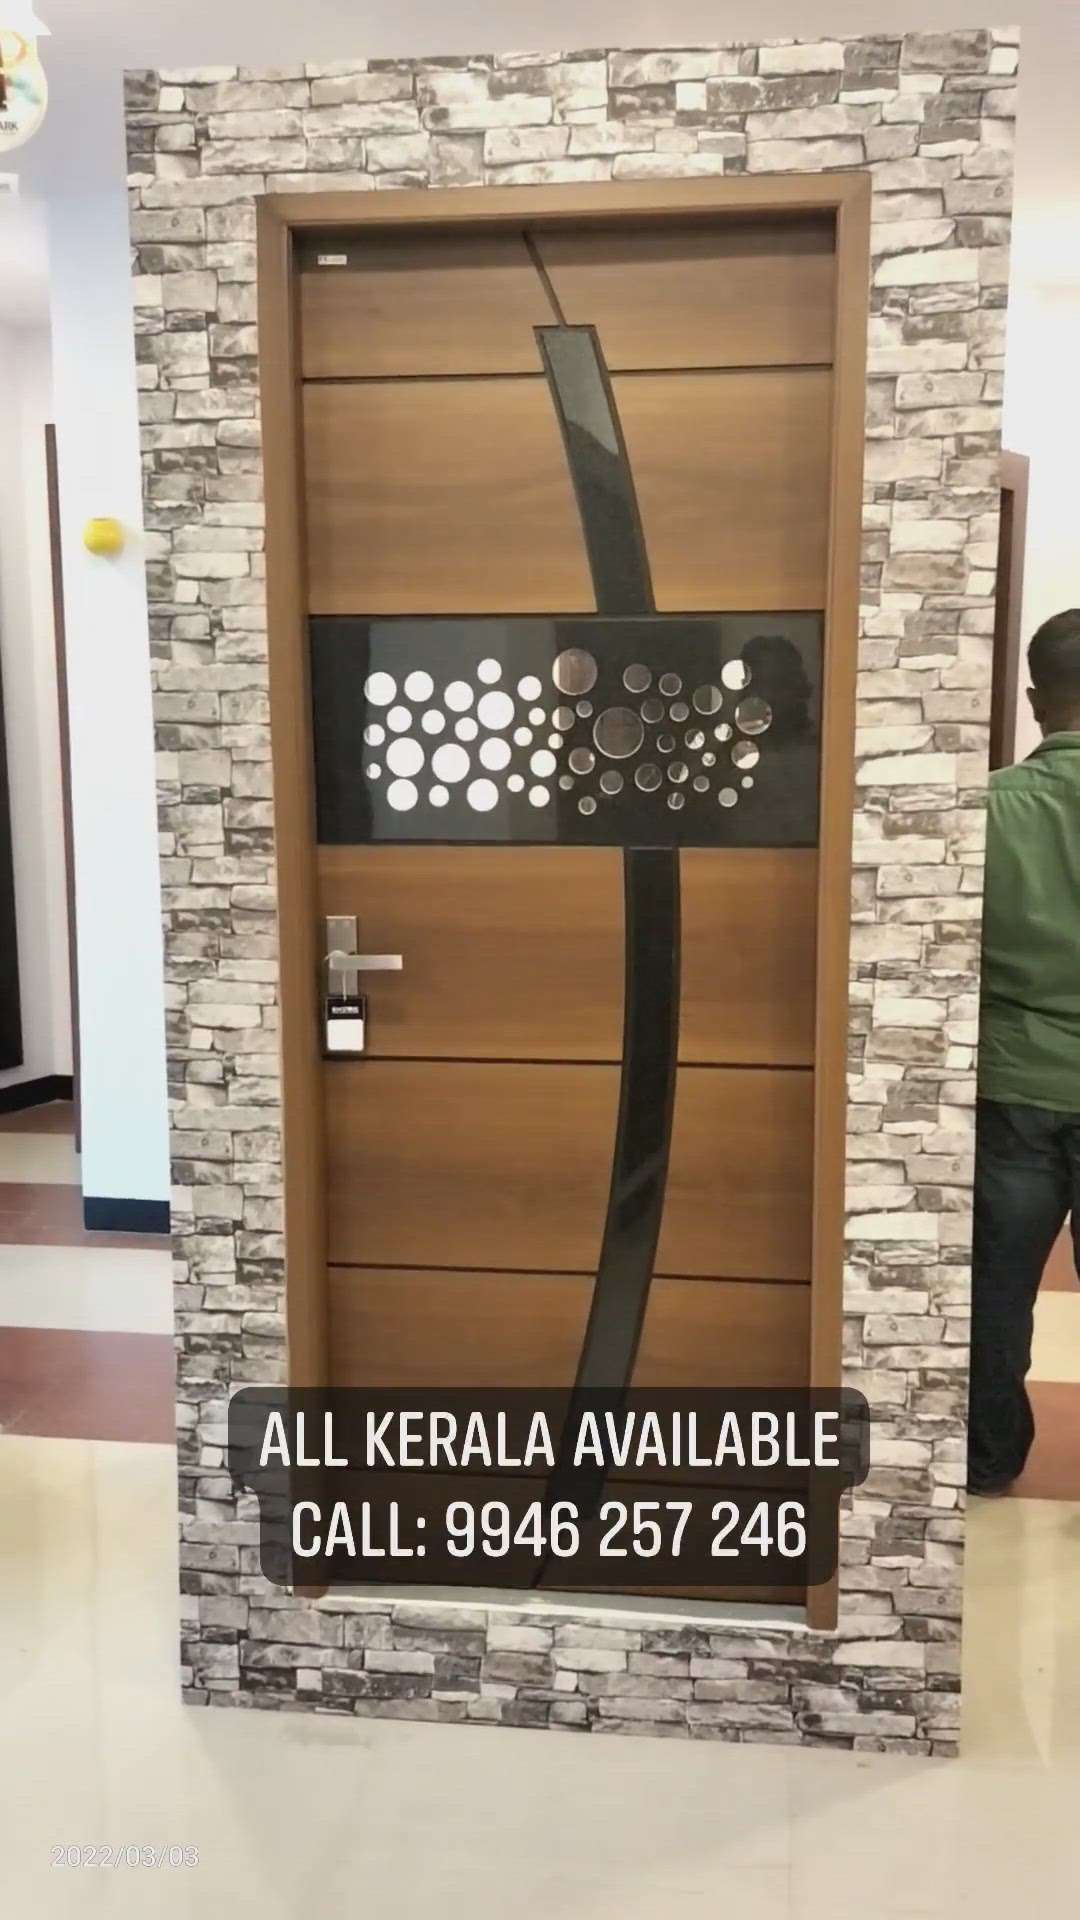 FRP Bathroom Doors | All Kerala Available

#door